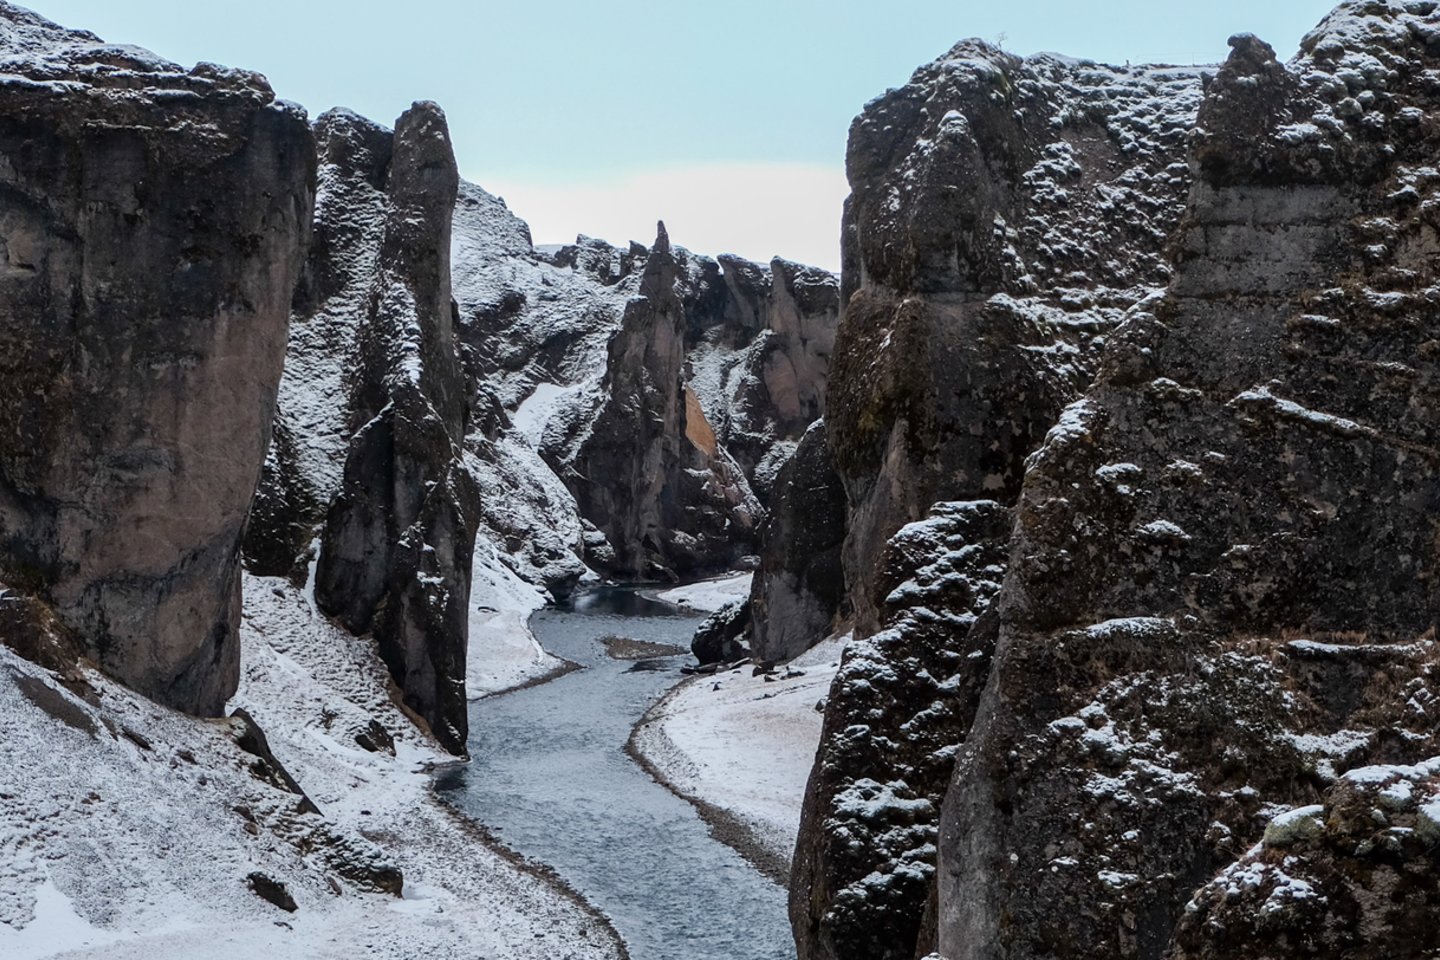   Fjaðrárgljúfur slėnis.<br> S. Mackevičiaus nuotr.